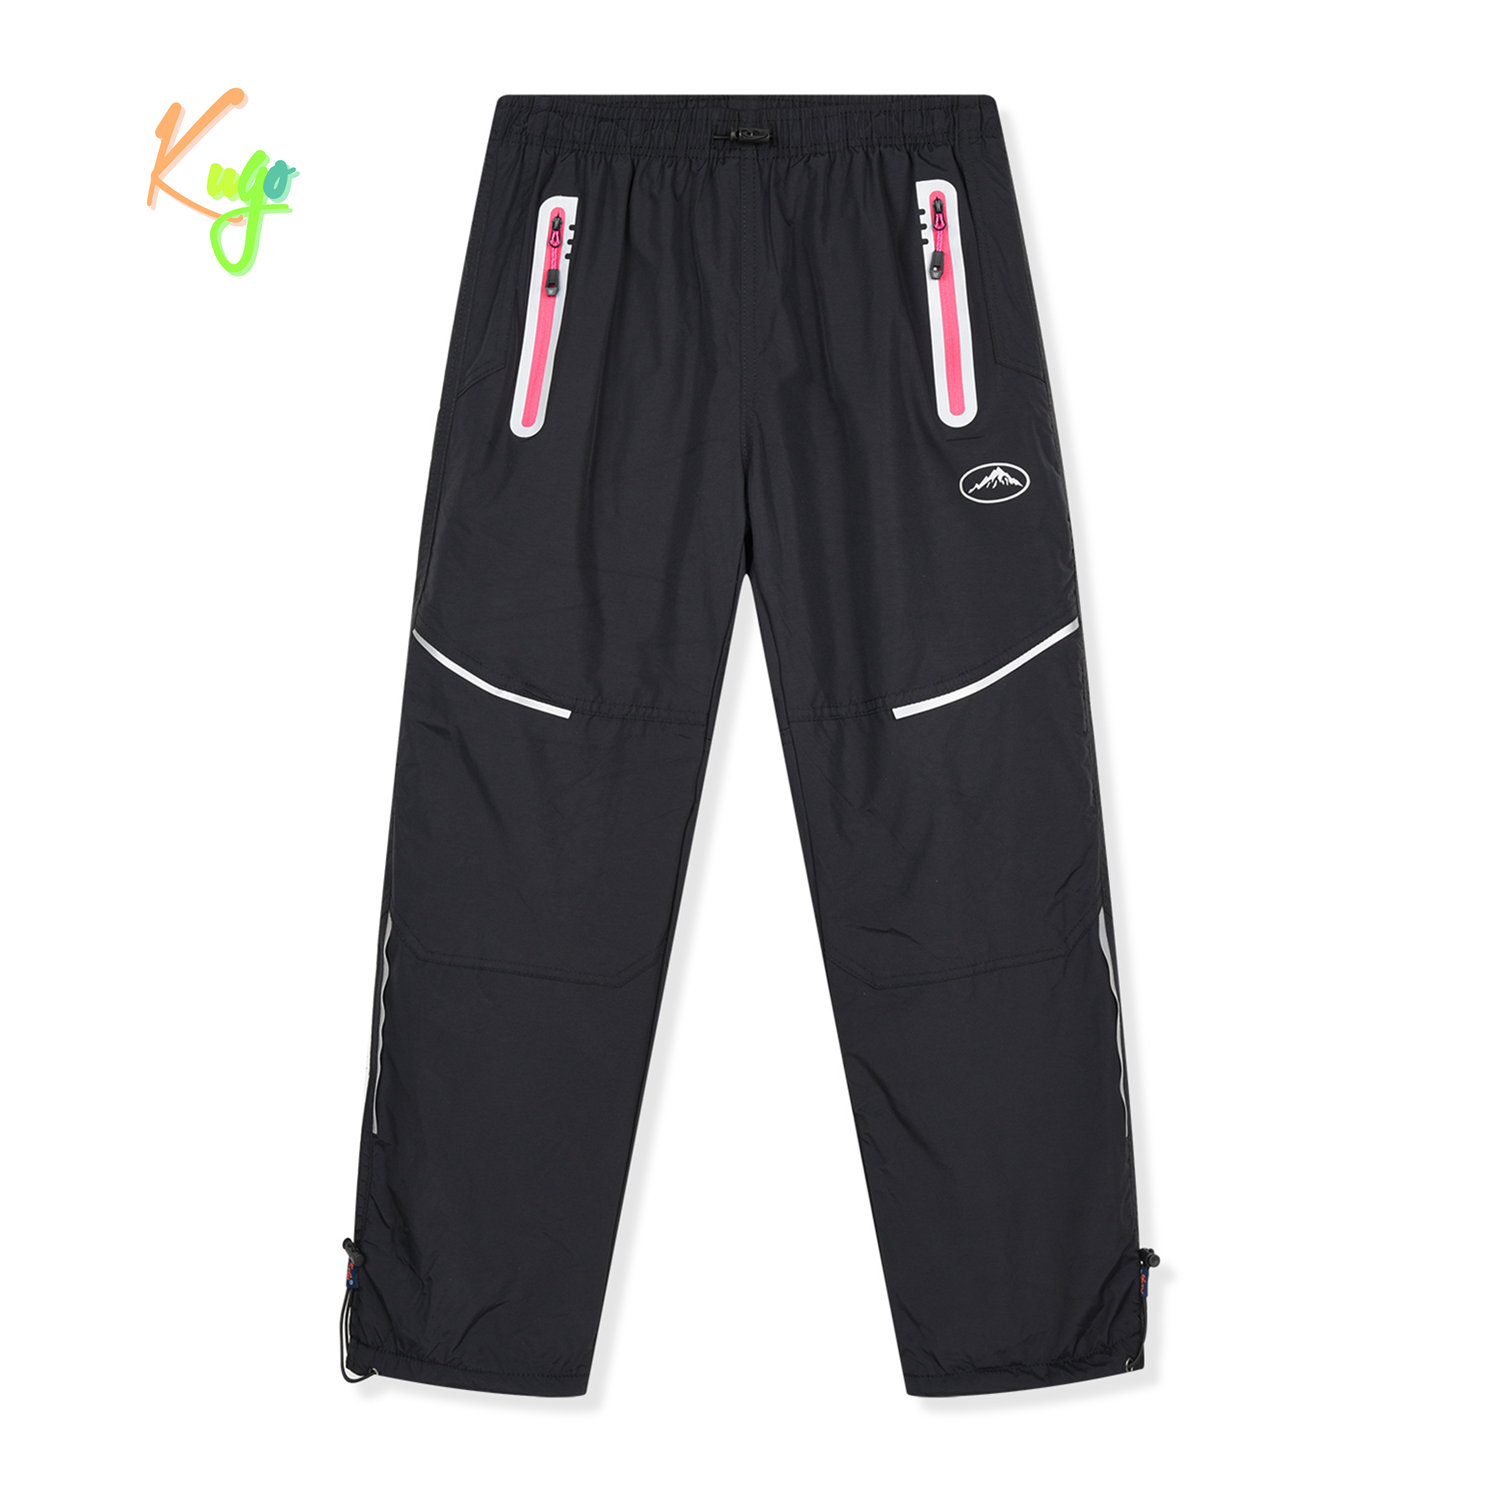 Dívčí šusťákové kalhoty, zateplené - KUGO DK8238, černá / růžové zipy Barva: Černá, Velikost: 146